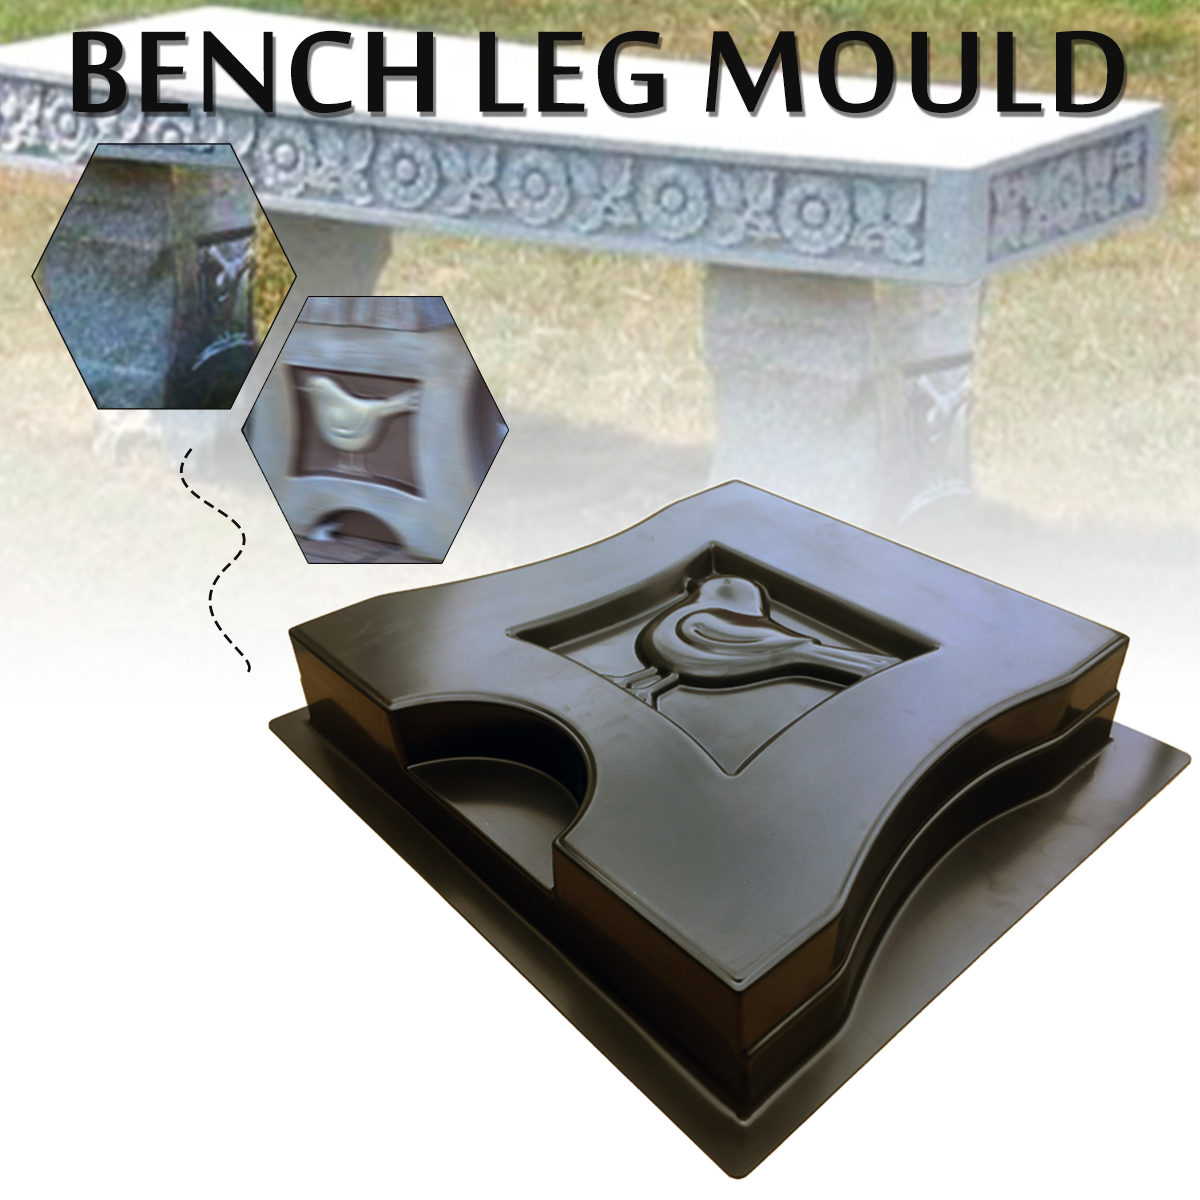 Bench-Leg-Mould-Garden-Concrete-Paving-Cement-Mold-Stone-Chair-Patio-Path-Decorations-1634582-1